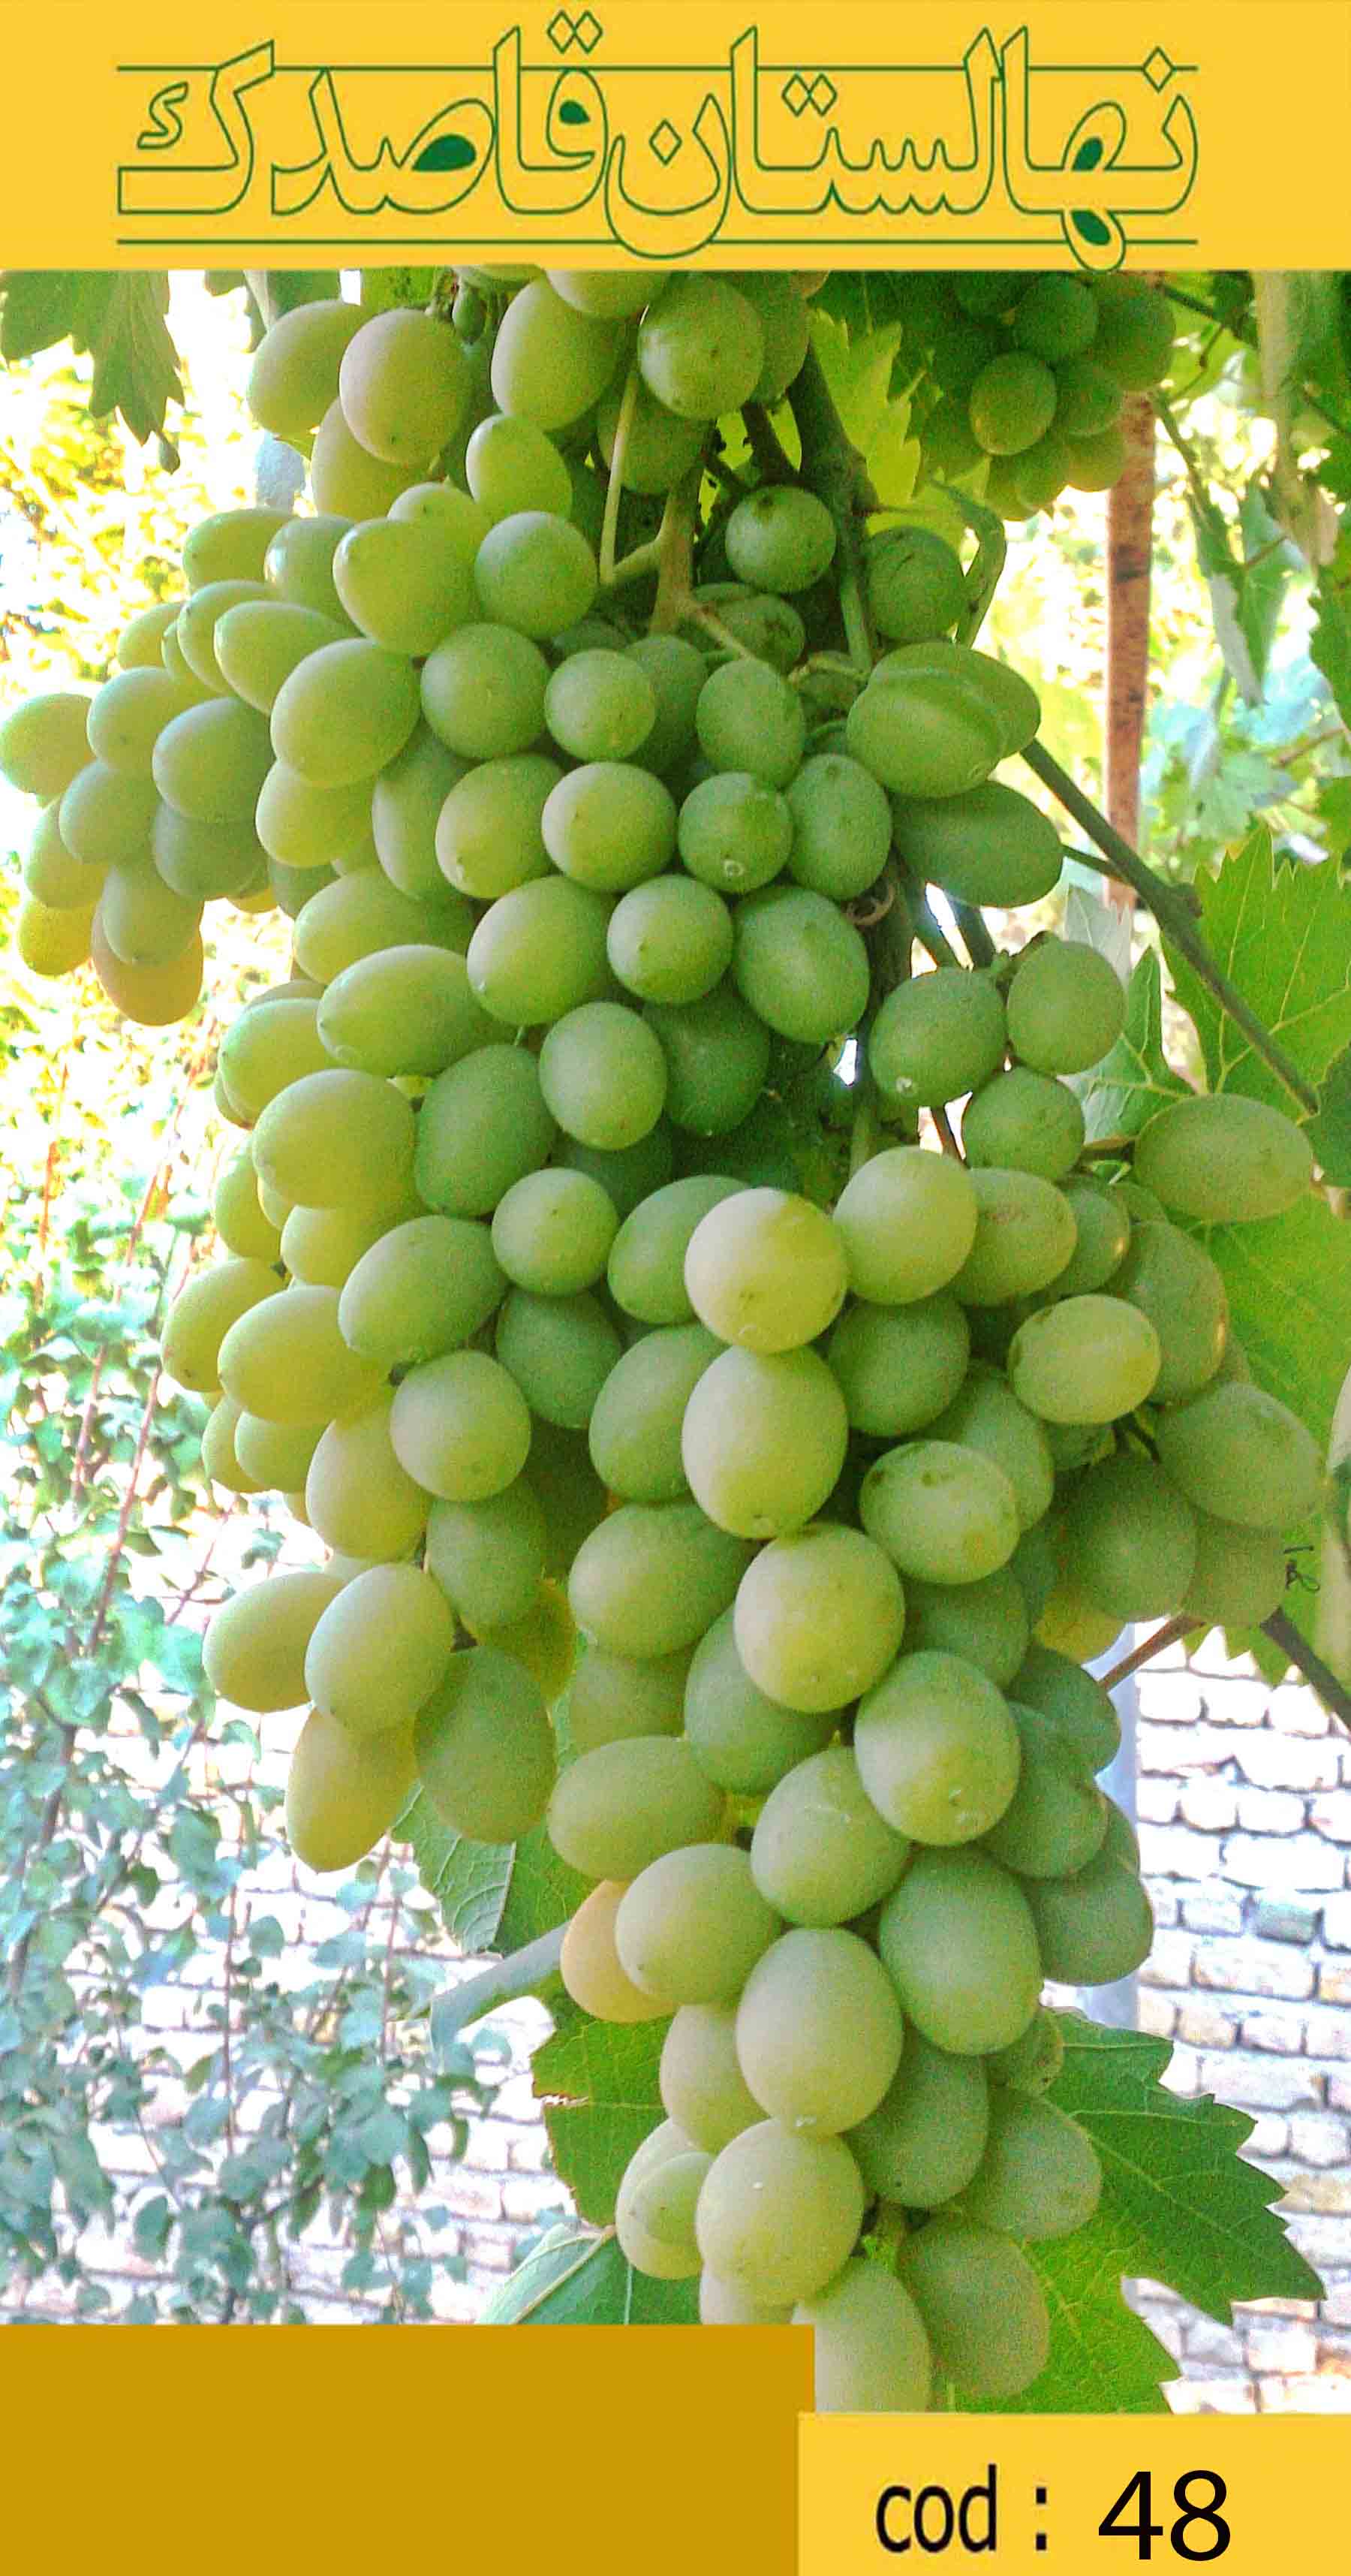   انگور شيرازي - انگوري با خوشه هاي بزرگ و سبز -پيش رس - دانه دار - مصرف تازه خوري 